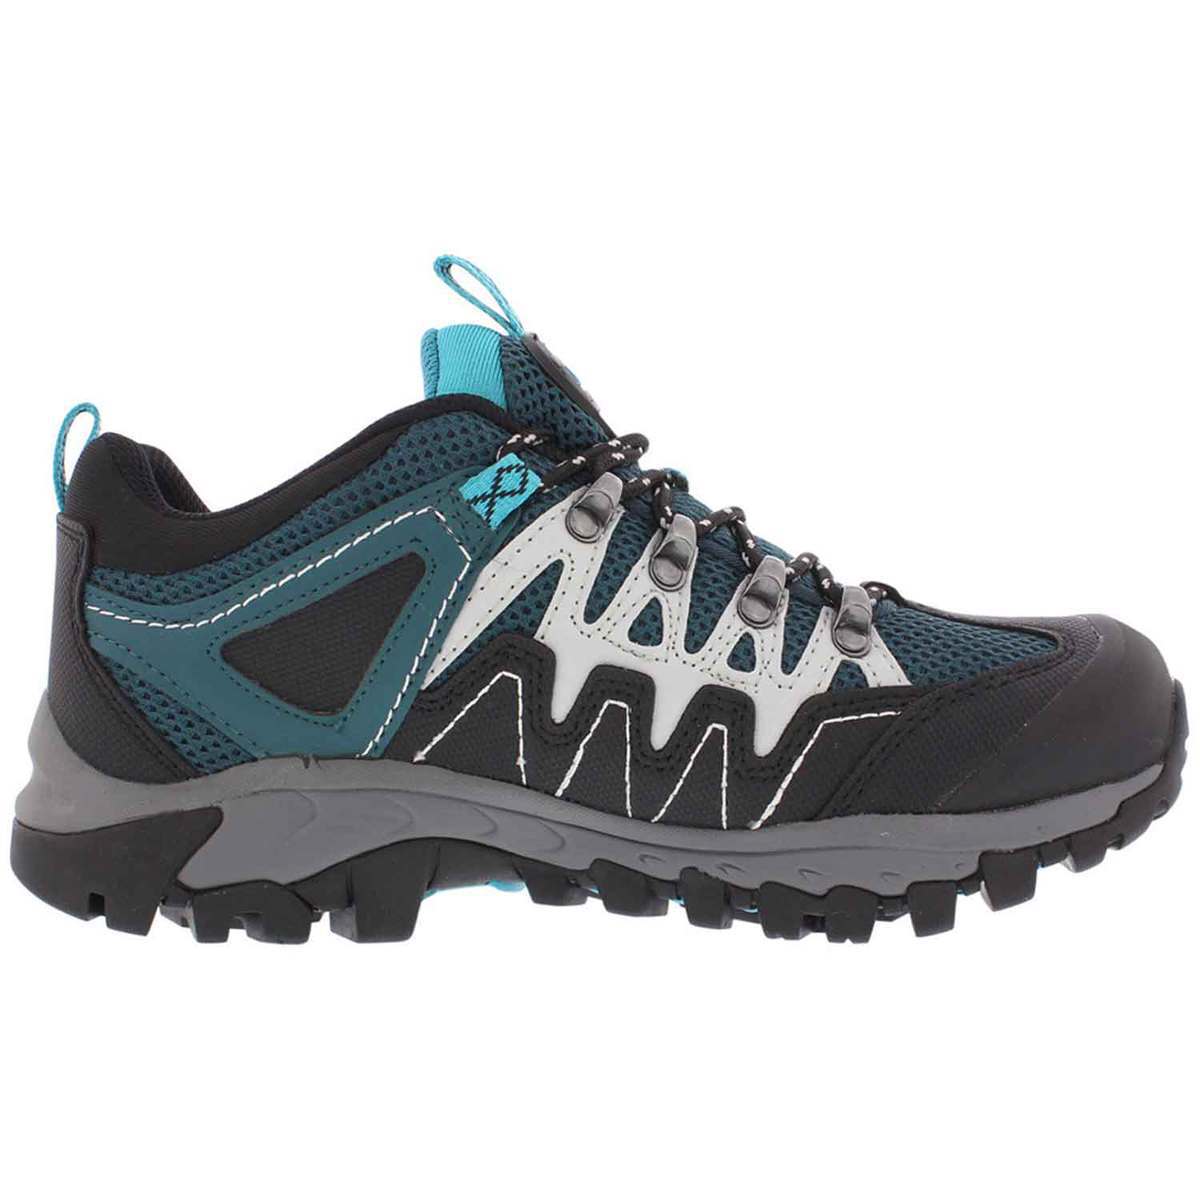 Pacific Mountain Women's Dutton Waterproof Low Hiking Shoes - Atlantic ...